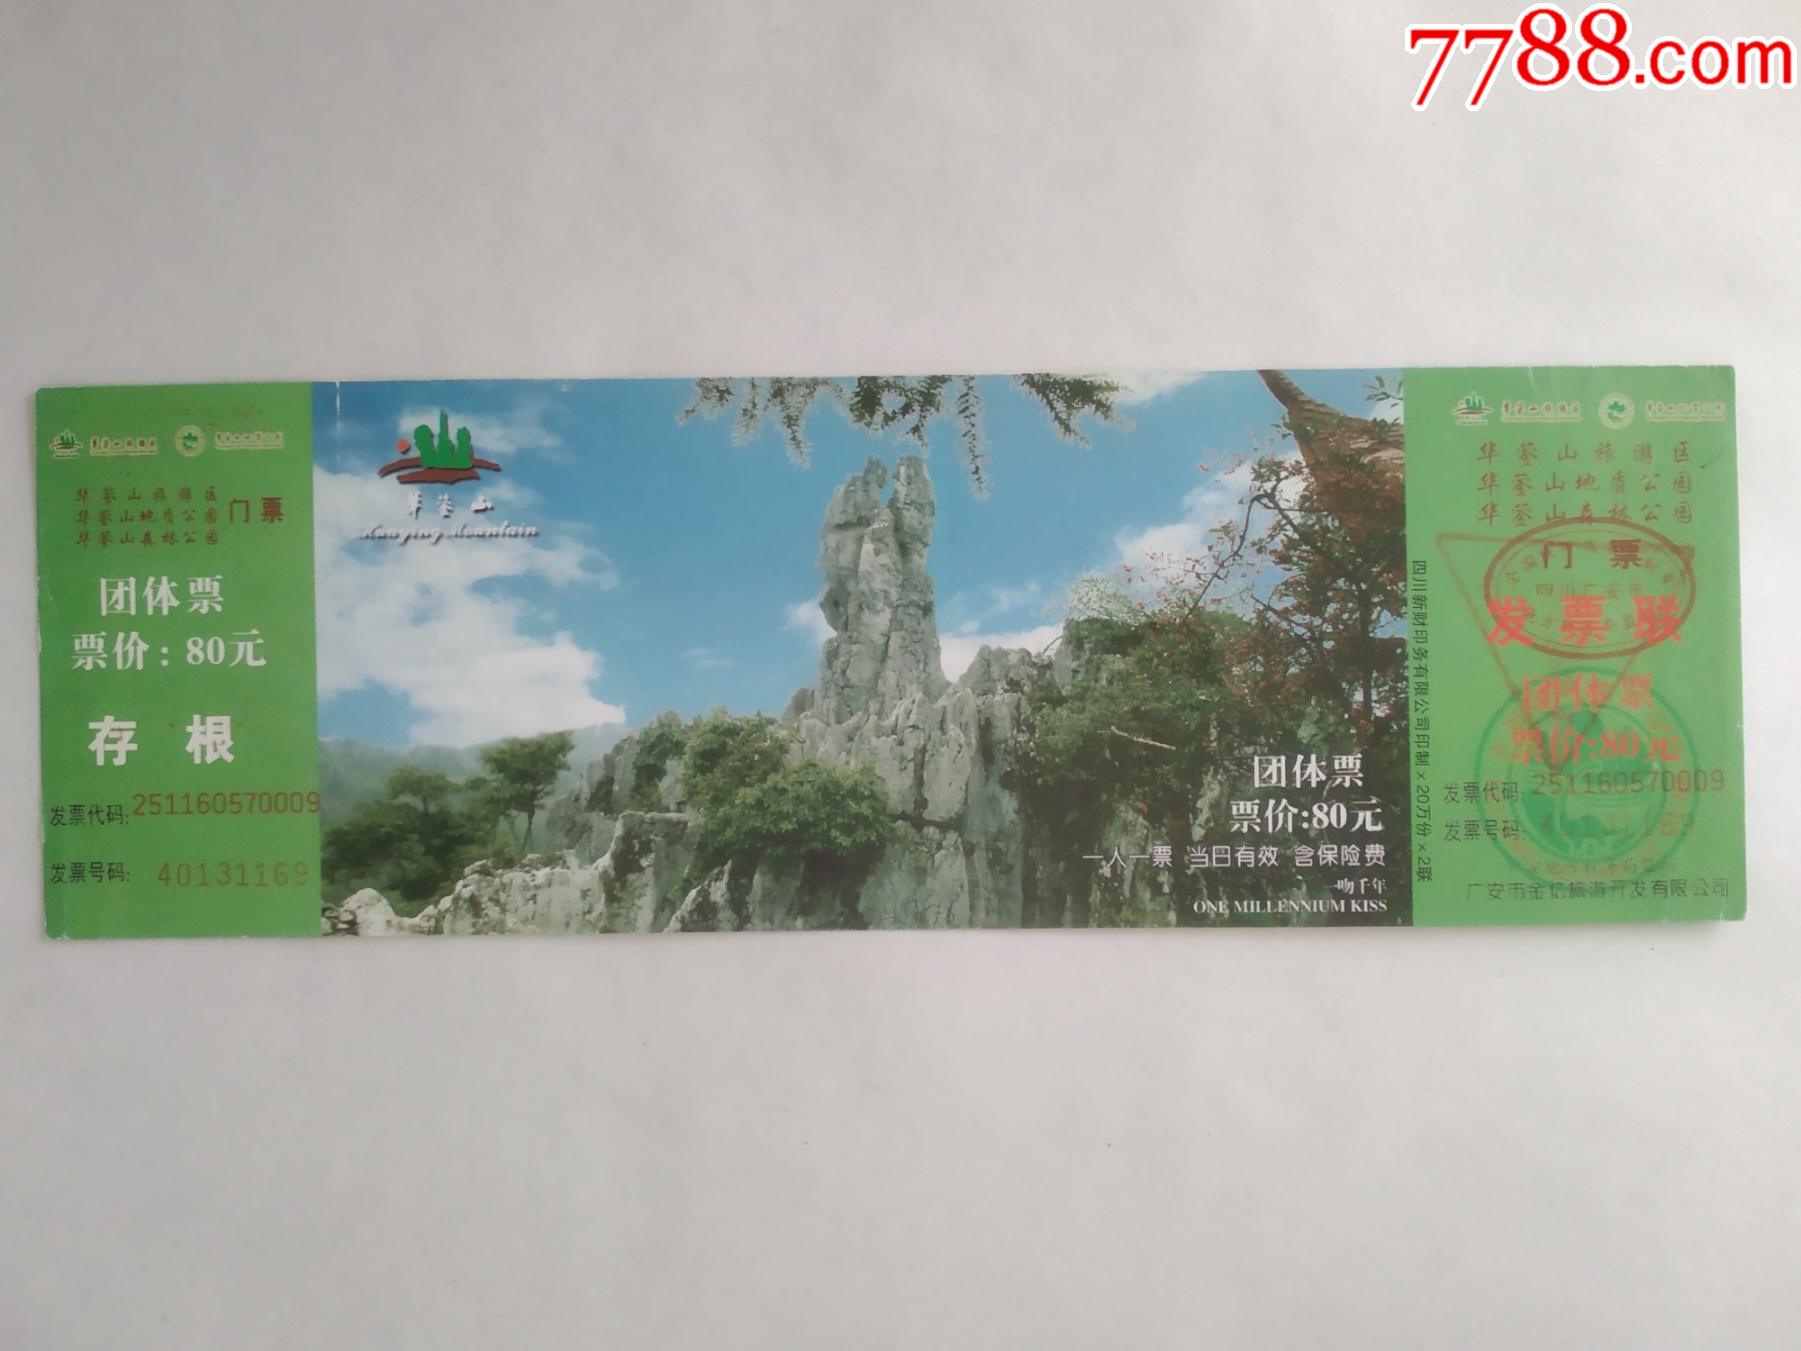 华蓥山【地质公园,森林公园】-旅游景点门票-7788期刊网